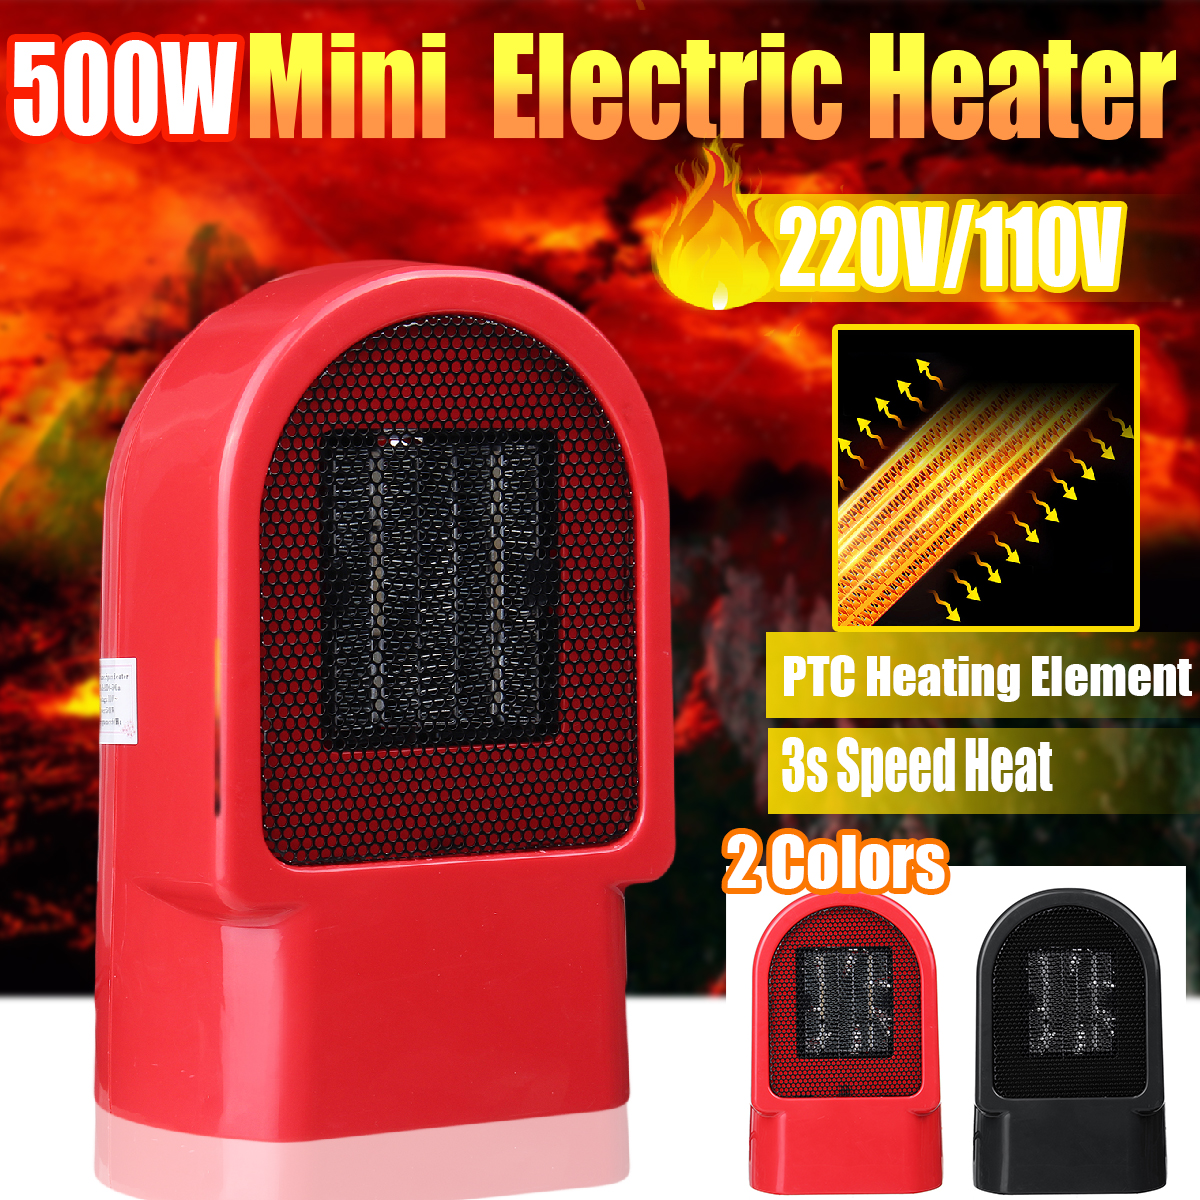 500W-Personal-Space-Heater-Mini-Electric-Desk-Heater-Fan-Heater-For-Home-Office-Floor-or-Desktop-1577731-1